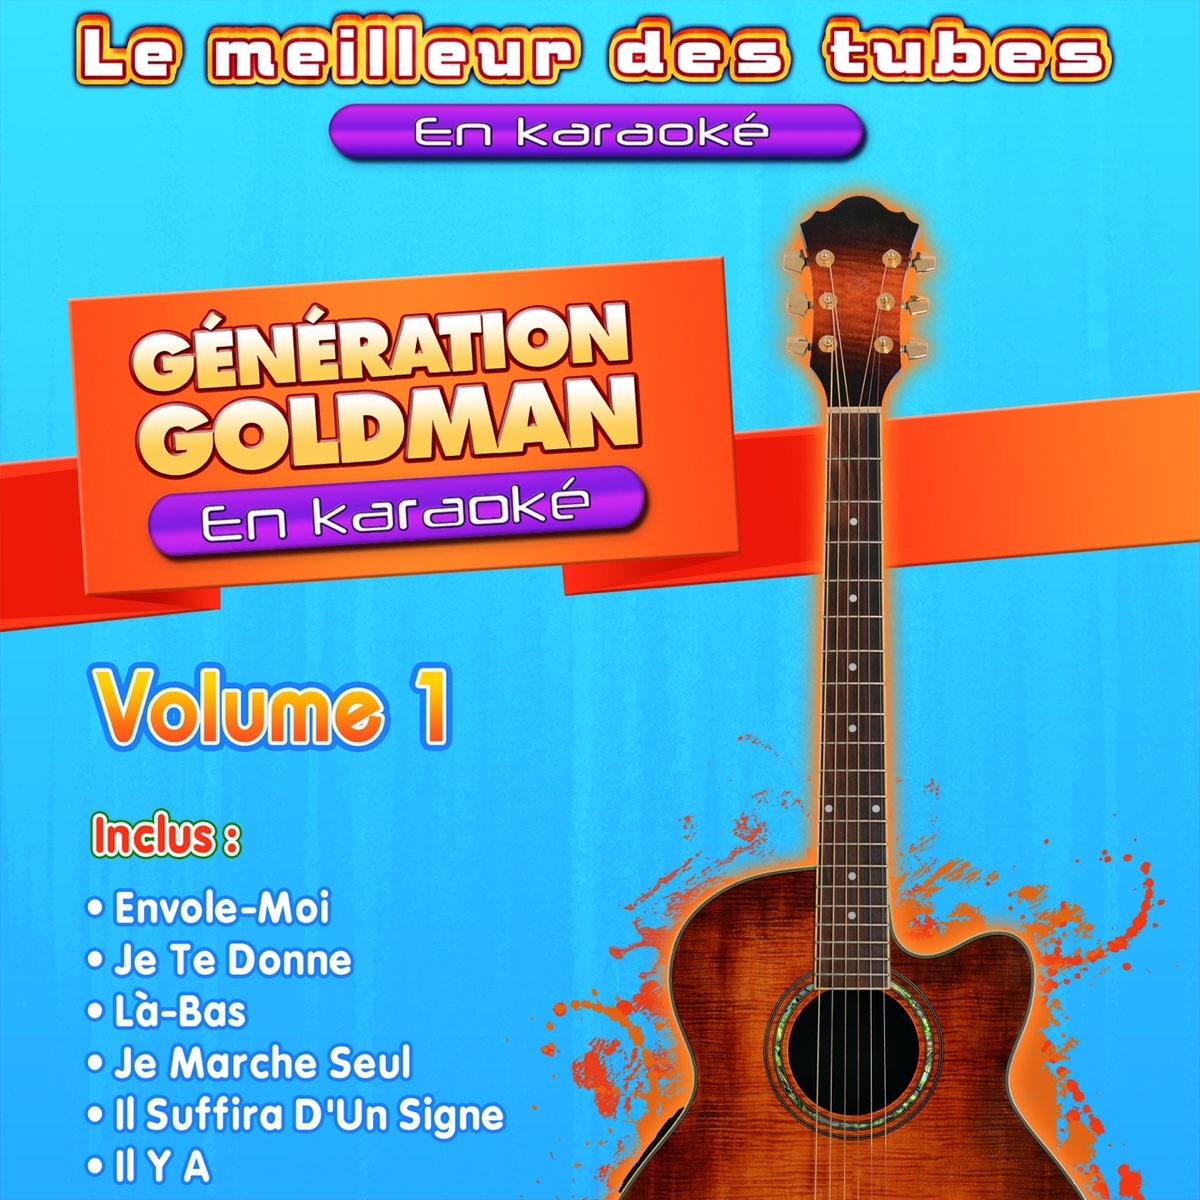 Génération Goldman en karaoké, vol. 1 by Le Meilleur des Tubes en Karaoke  on Apple Music